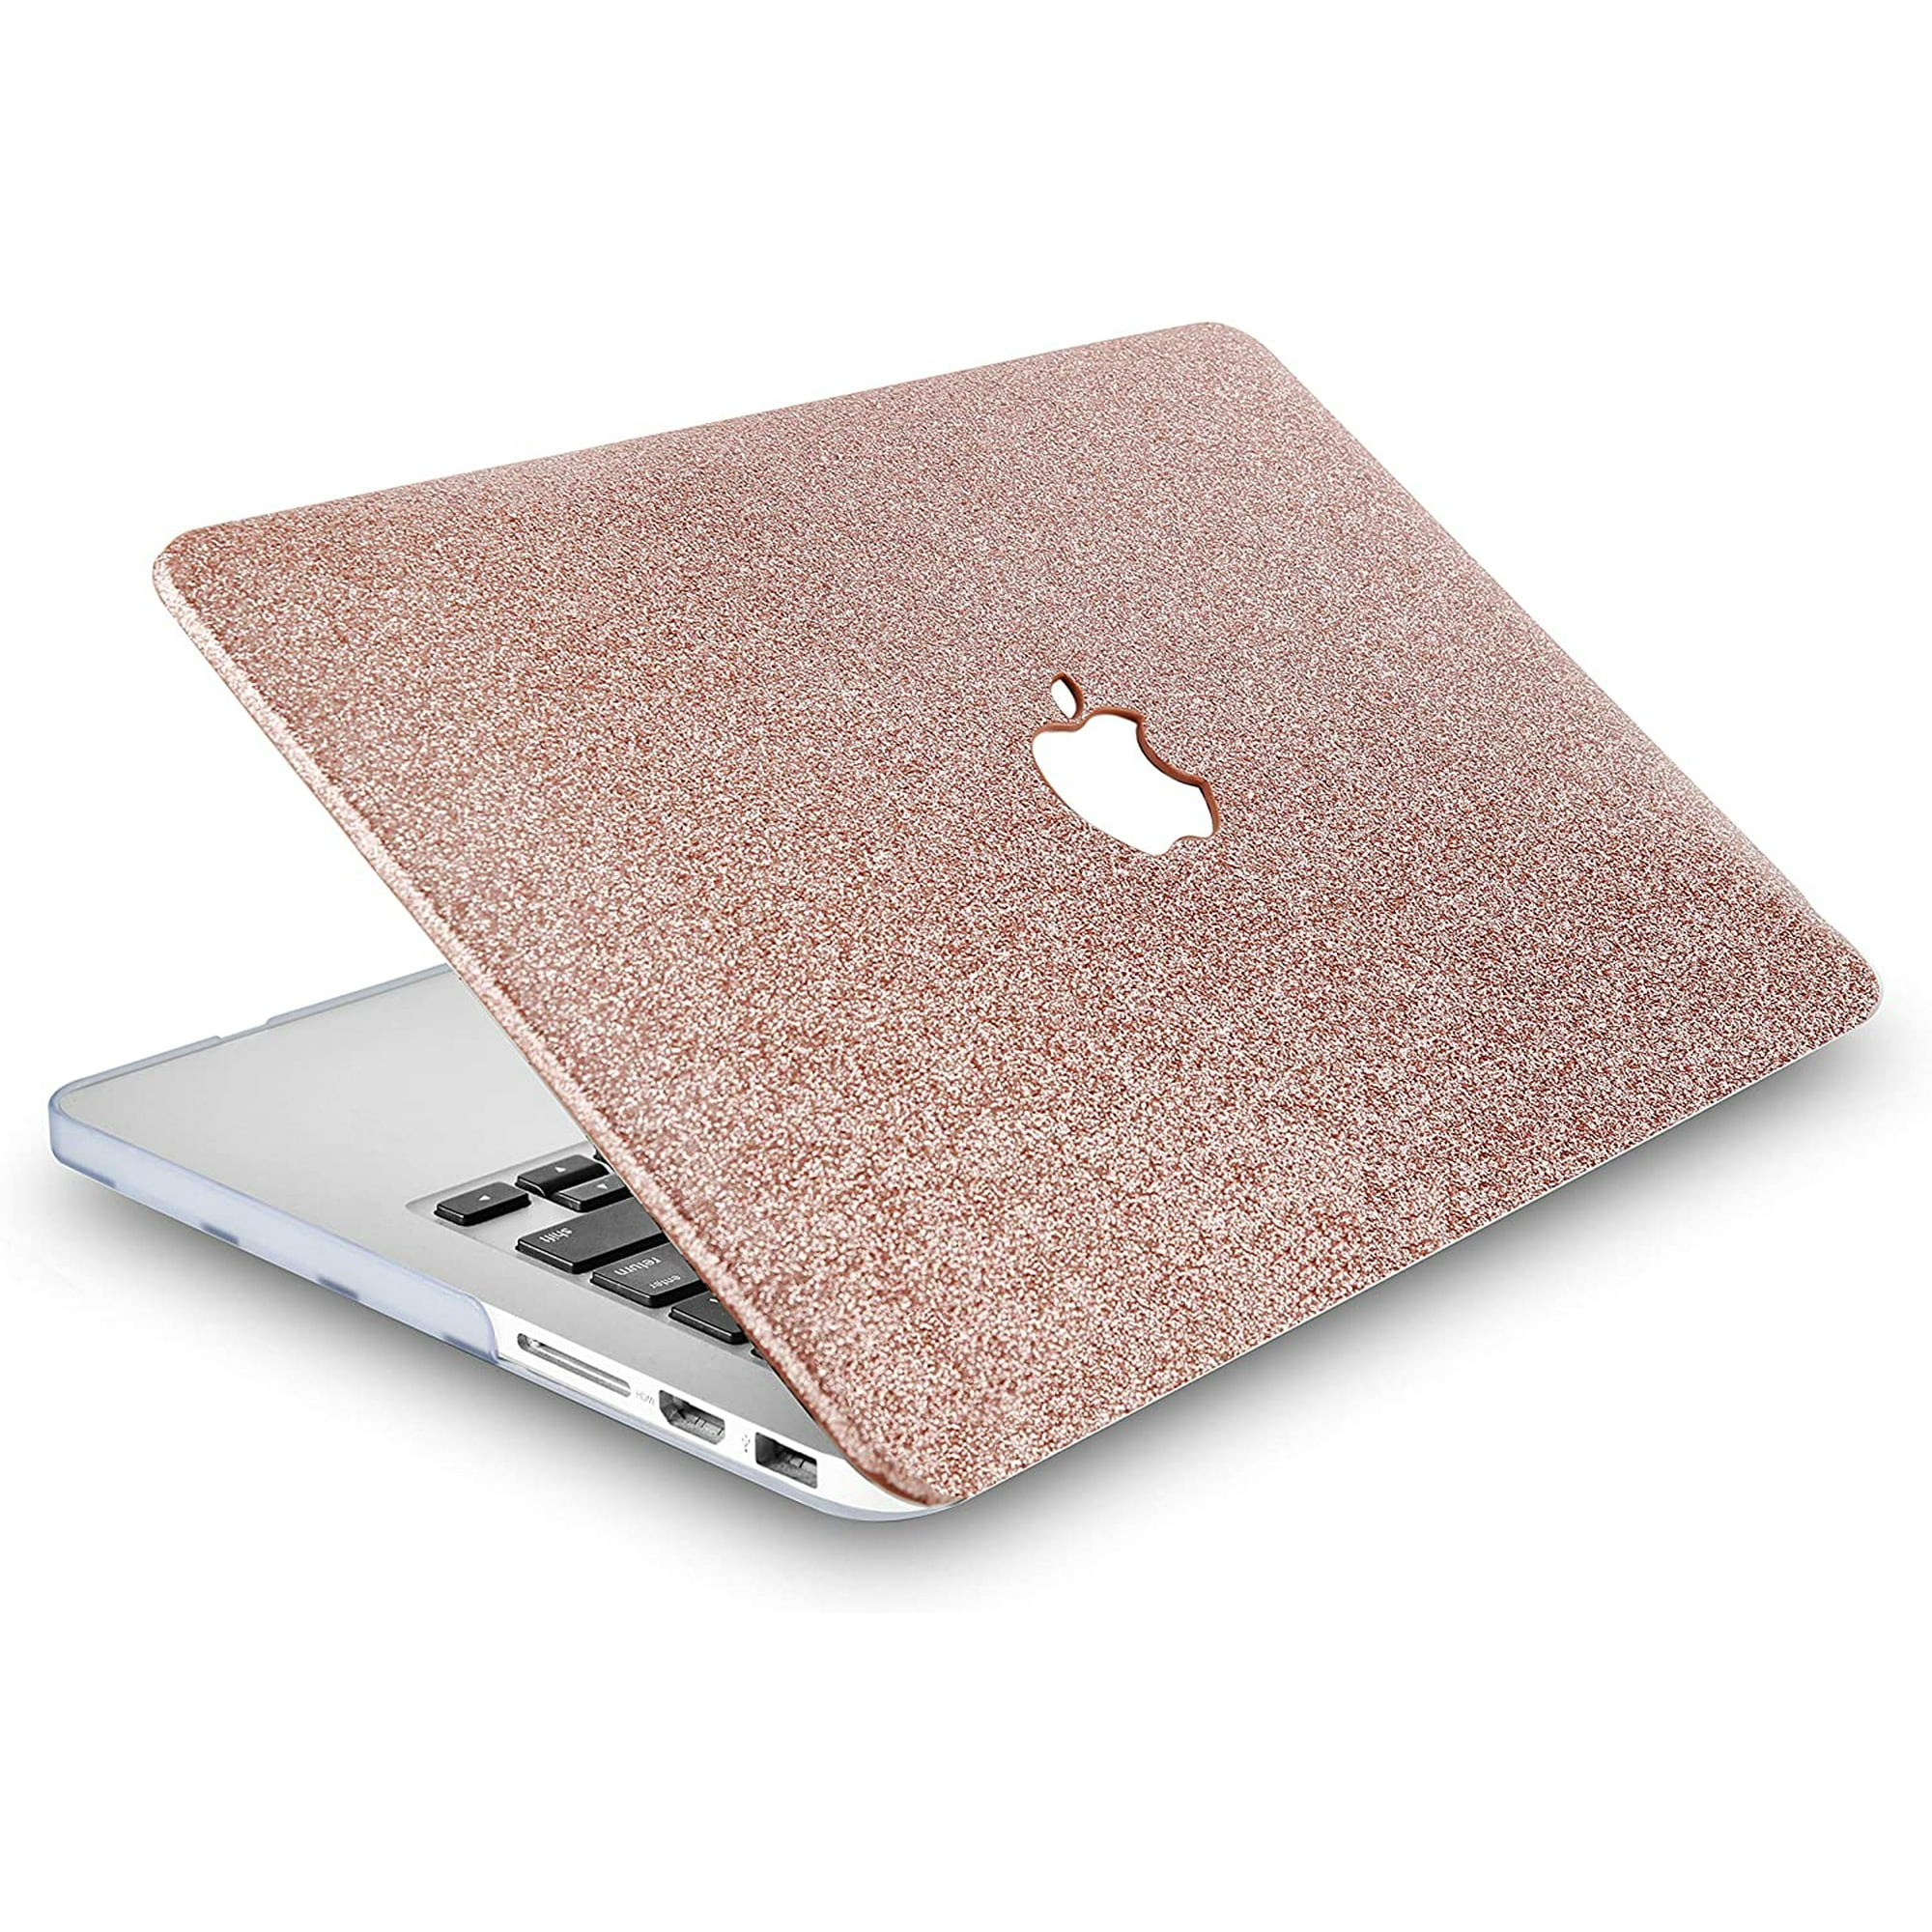 KECC Laptop Case for MacBook Pro 13